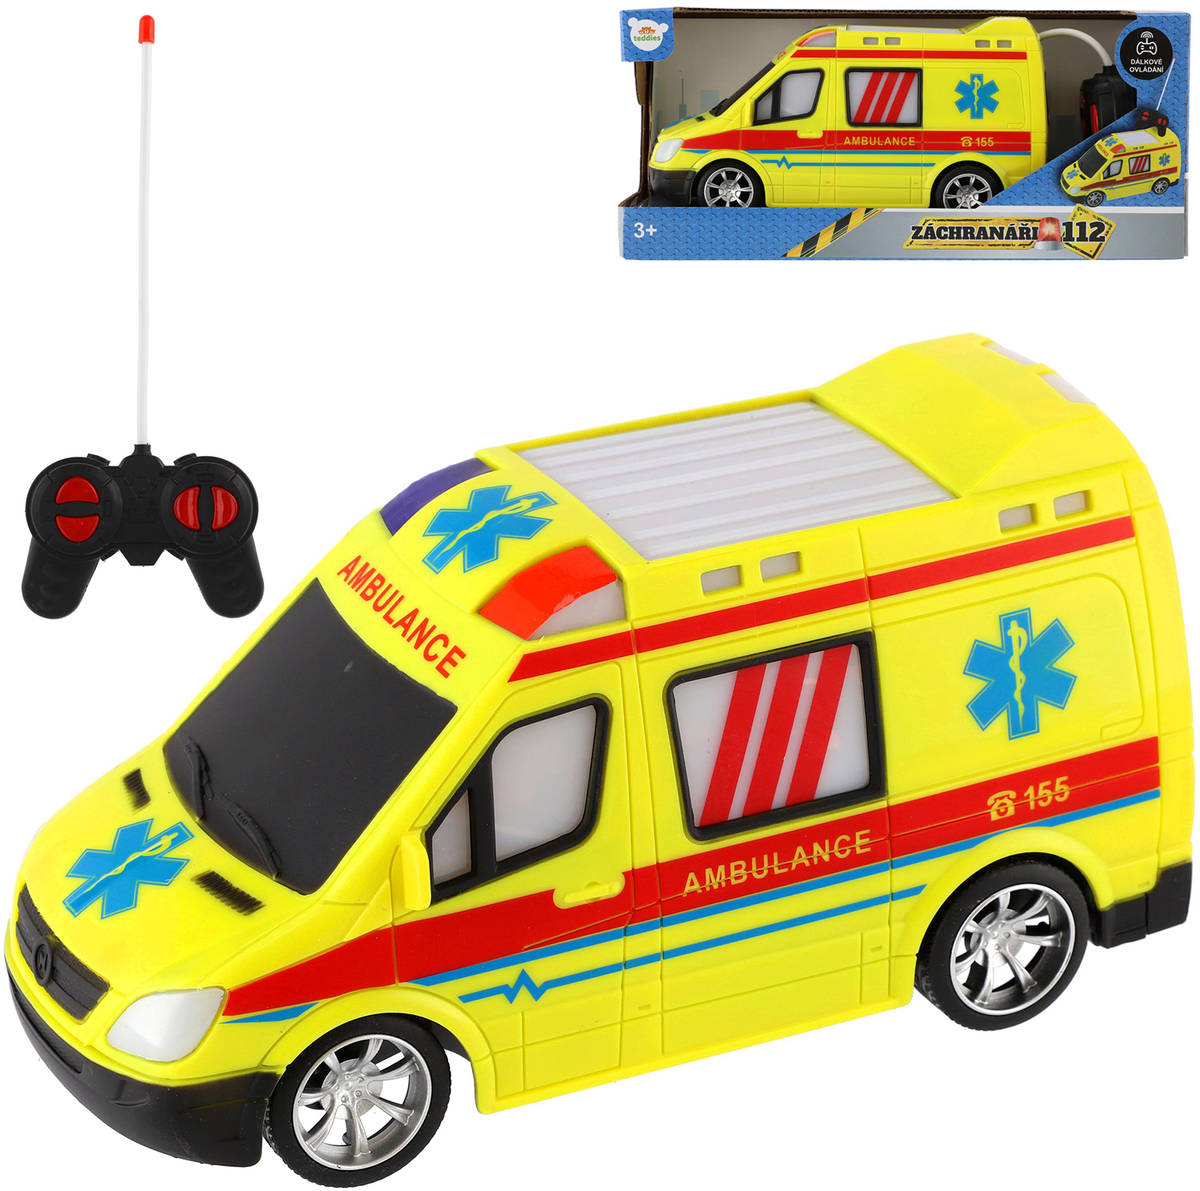 Fotografie Auto RC ambulance plast 20cm na dálkové ovládání 27MHz na baterie se světlem v krabici 28x